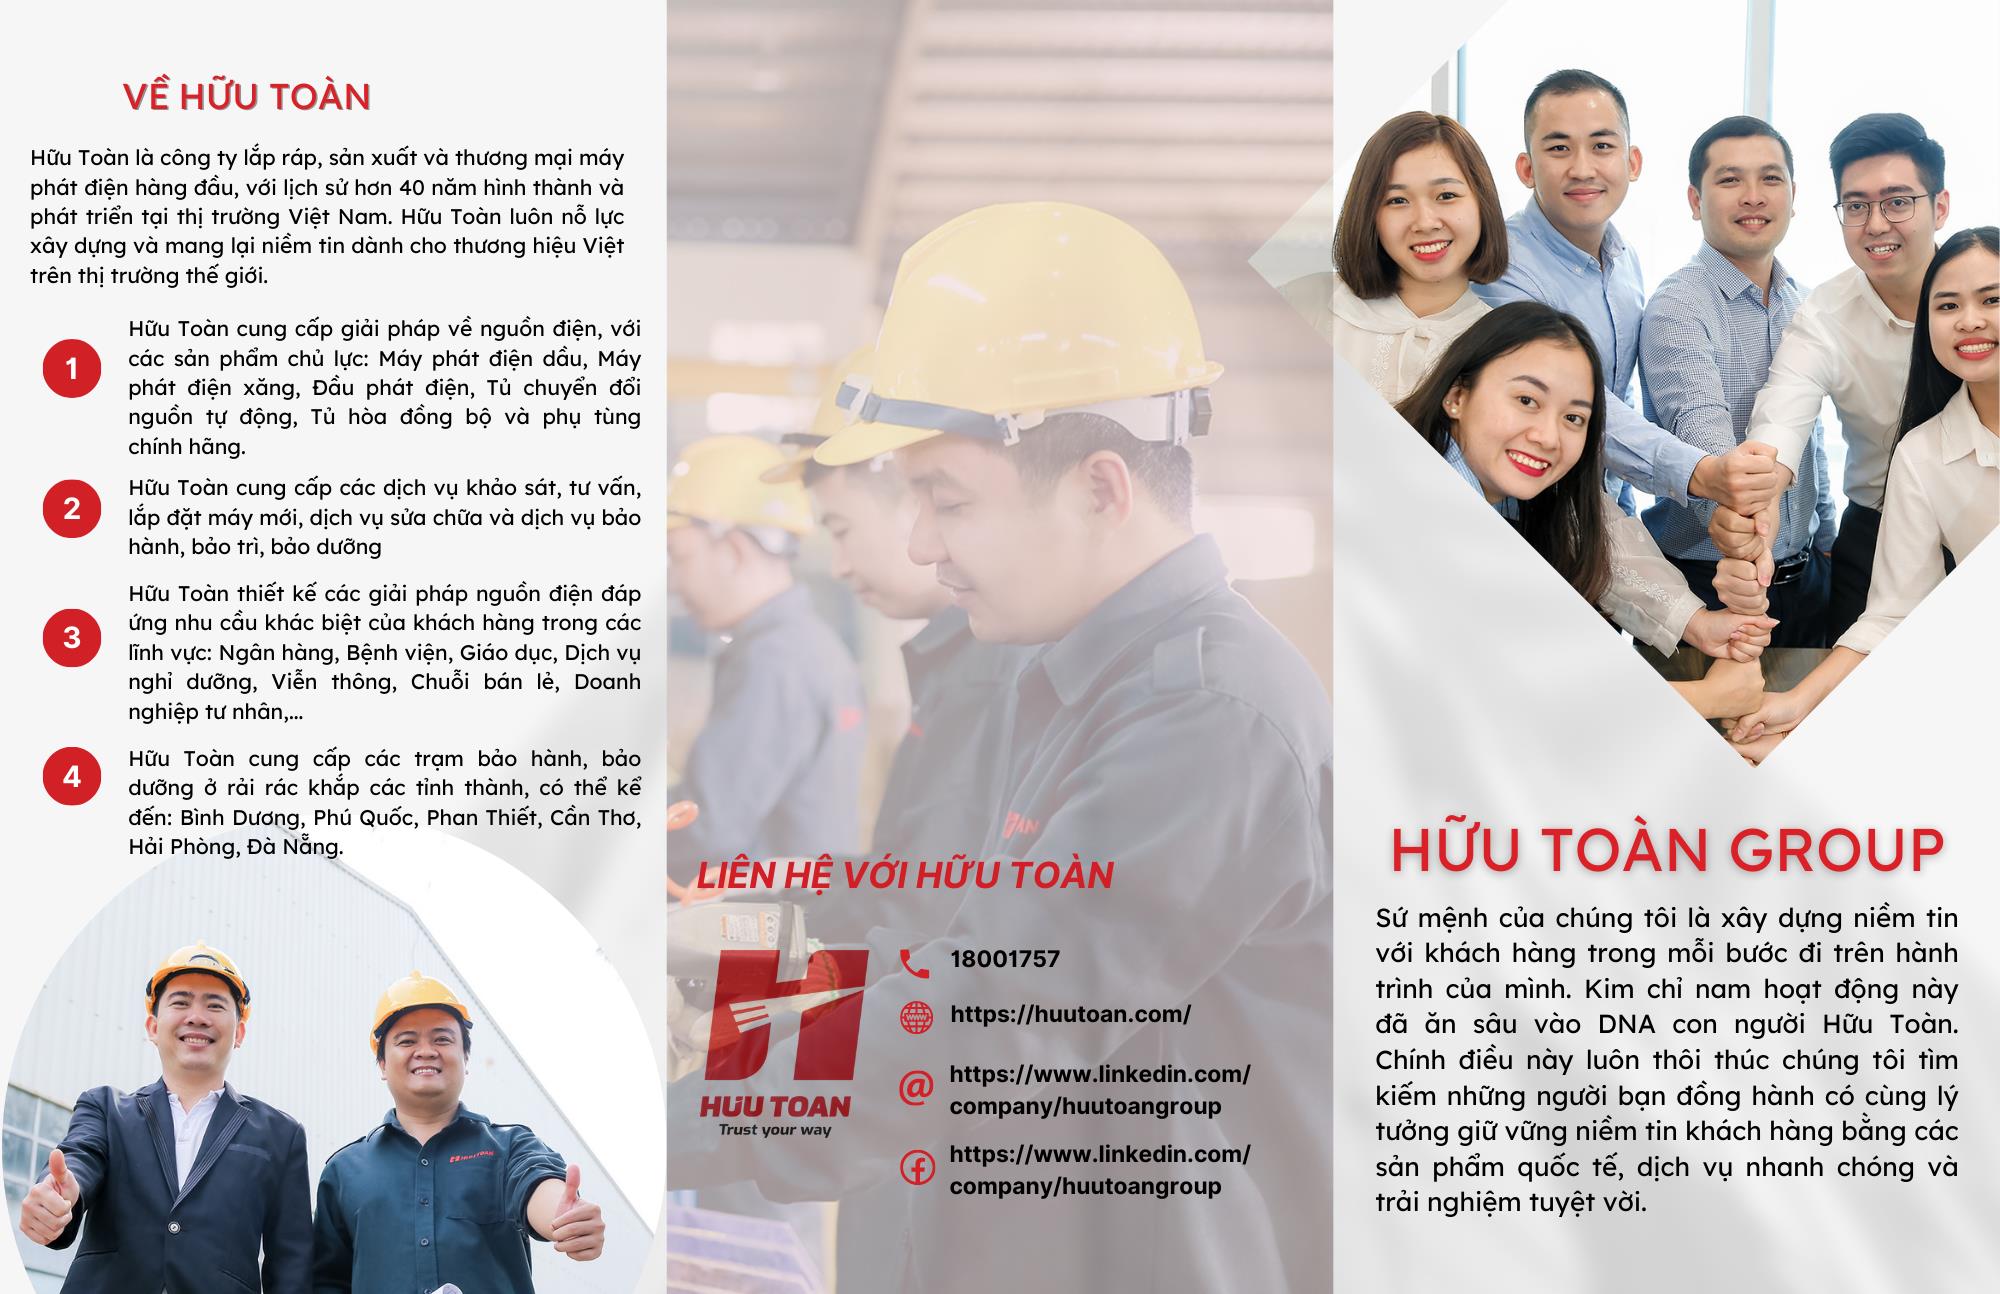 Thông báo tiếp nhận CV ứng tuyển phỏng vấn của Công ty TNHH Hữu Toàn Group